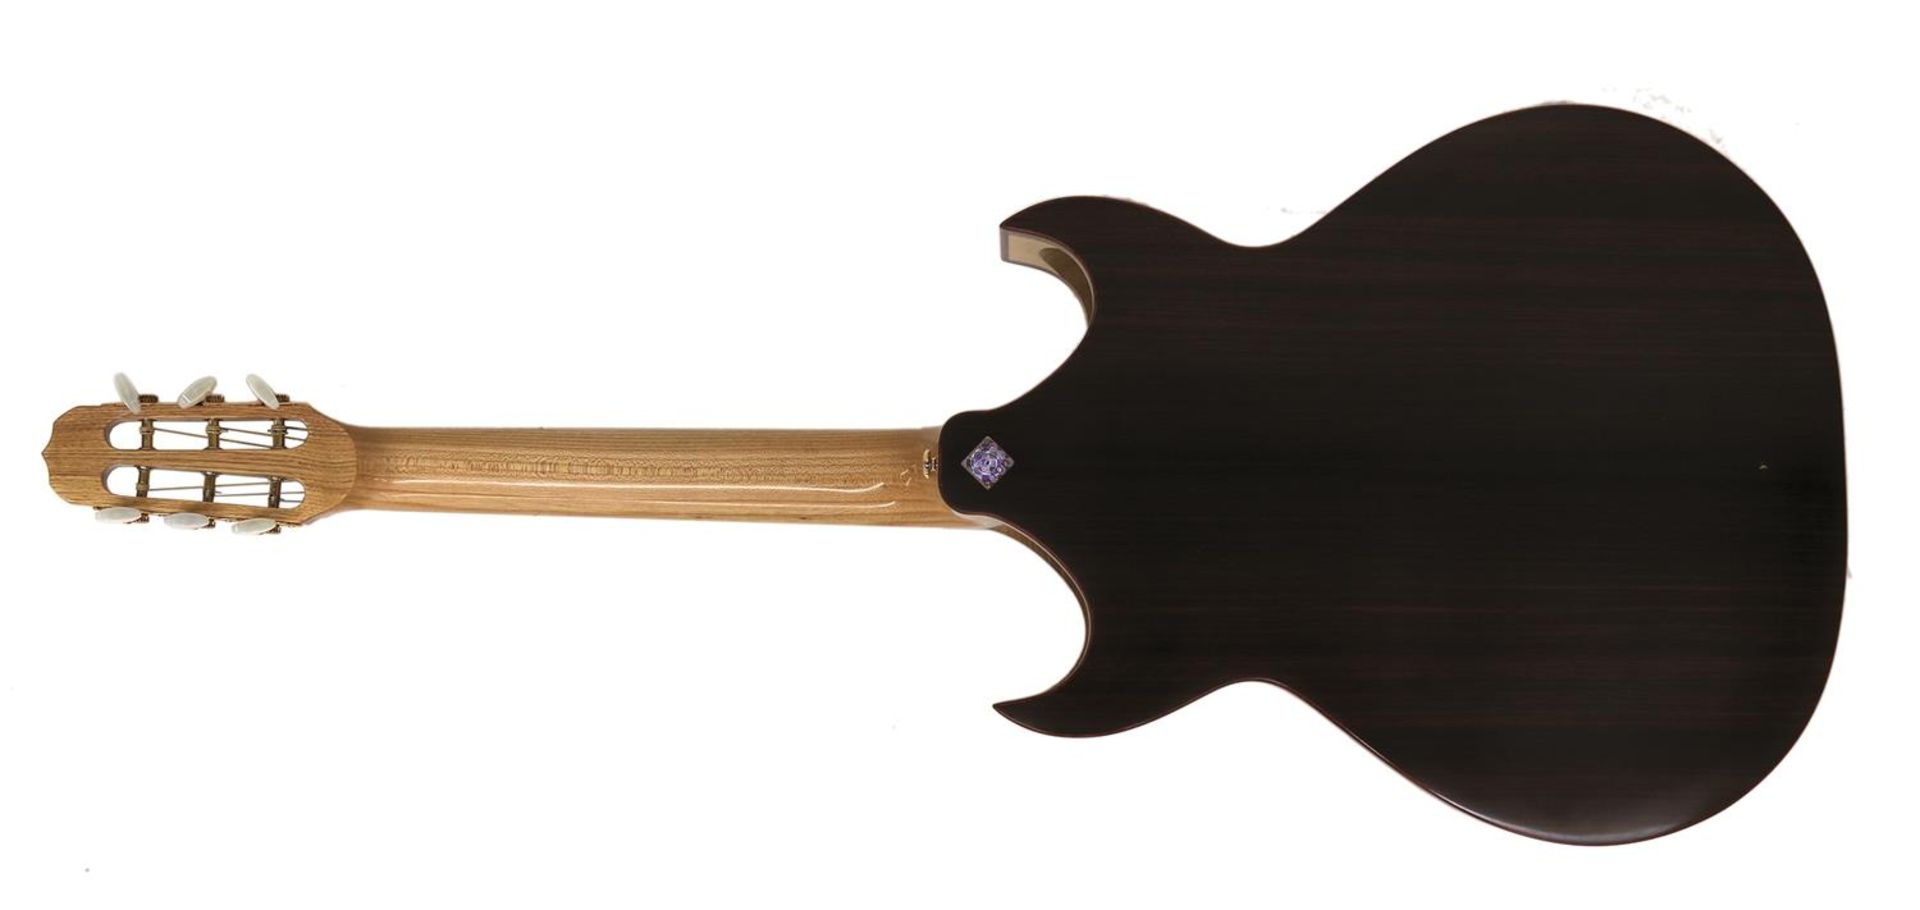 Gottschall, PeterFunnelbody Western Guitar Model FB 14/B. Seriennummer 50. Bj. 2006. Near mint - Image 2 of 4